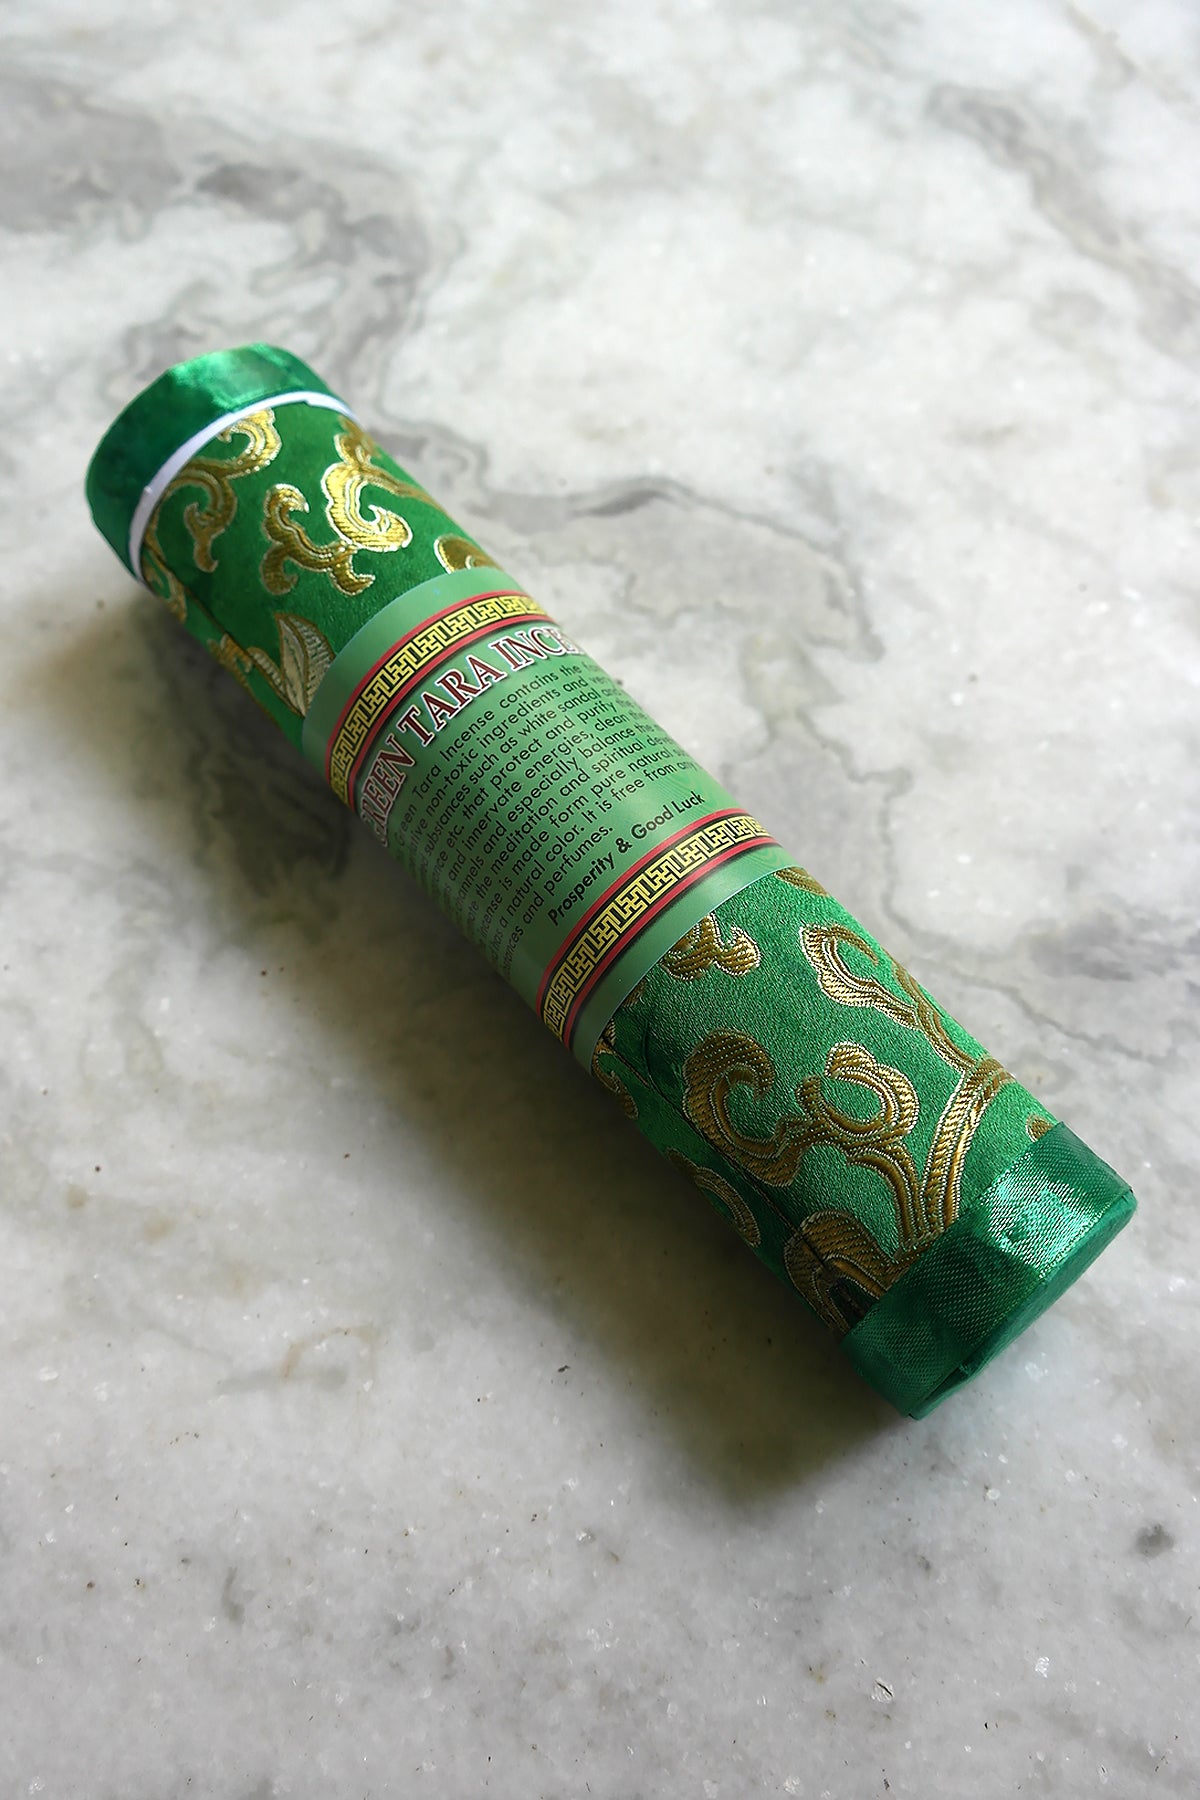 Green Tara Incense in brocade pack